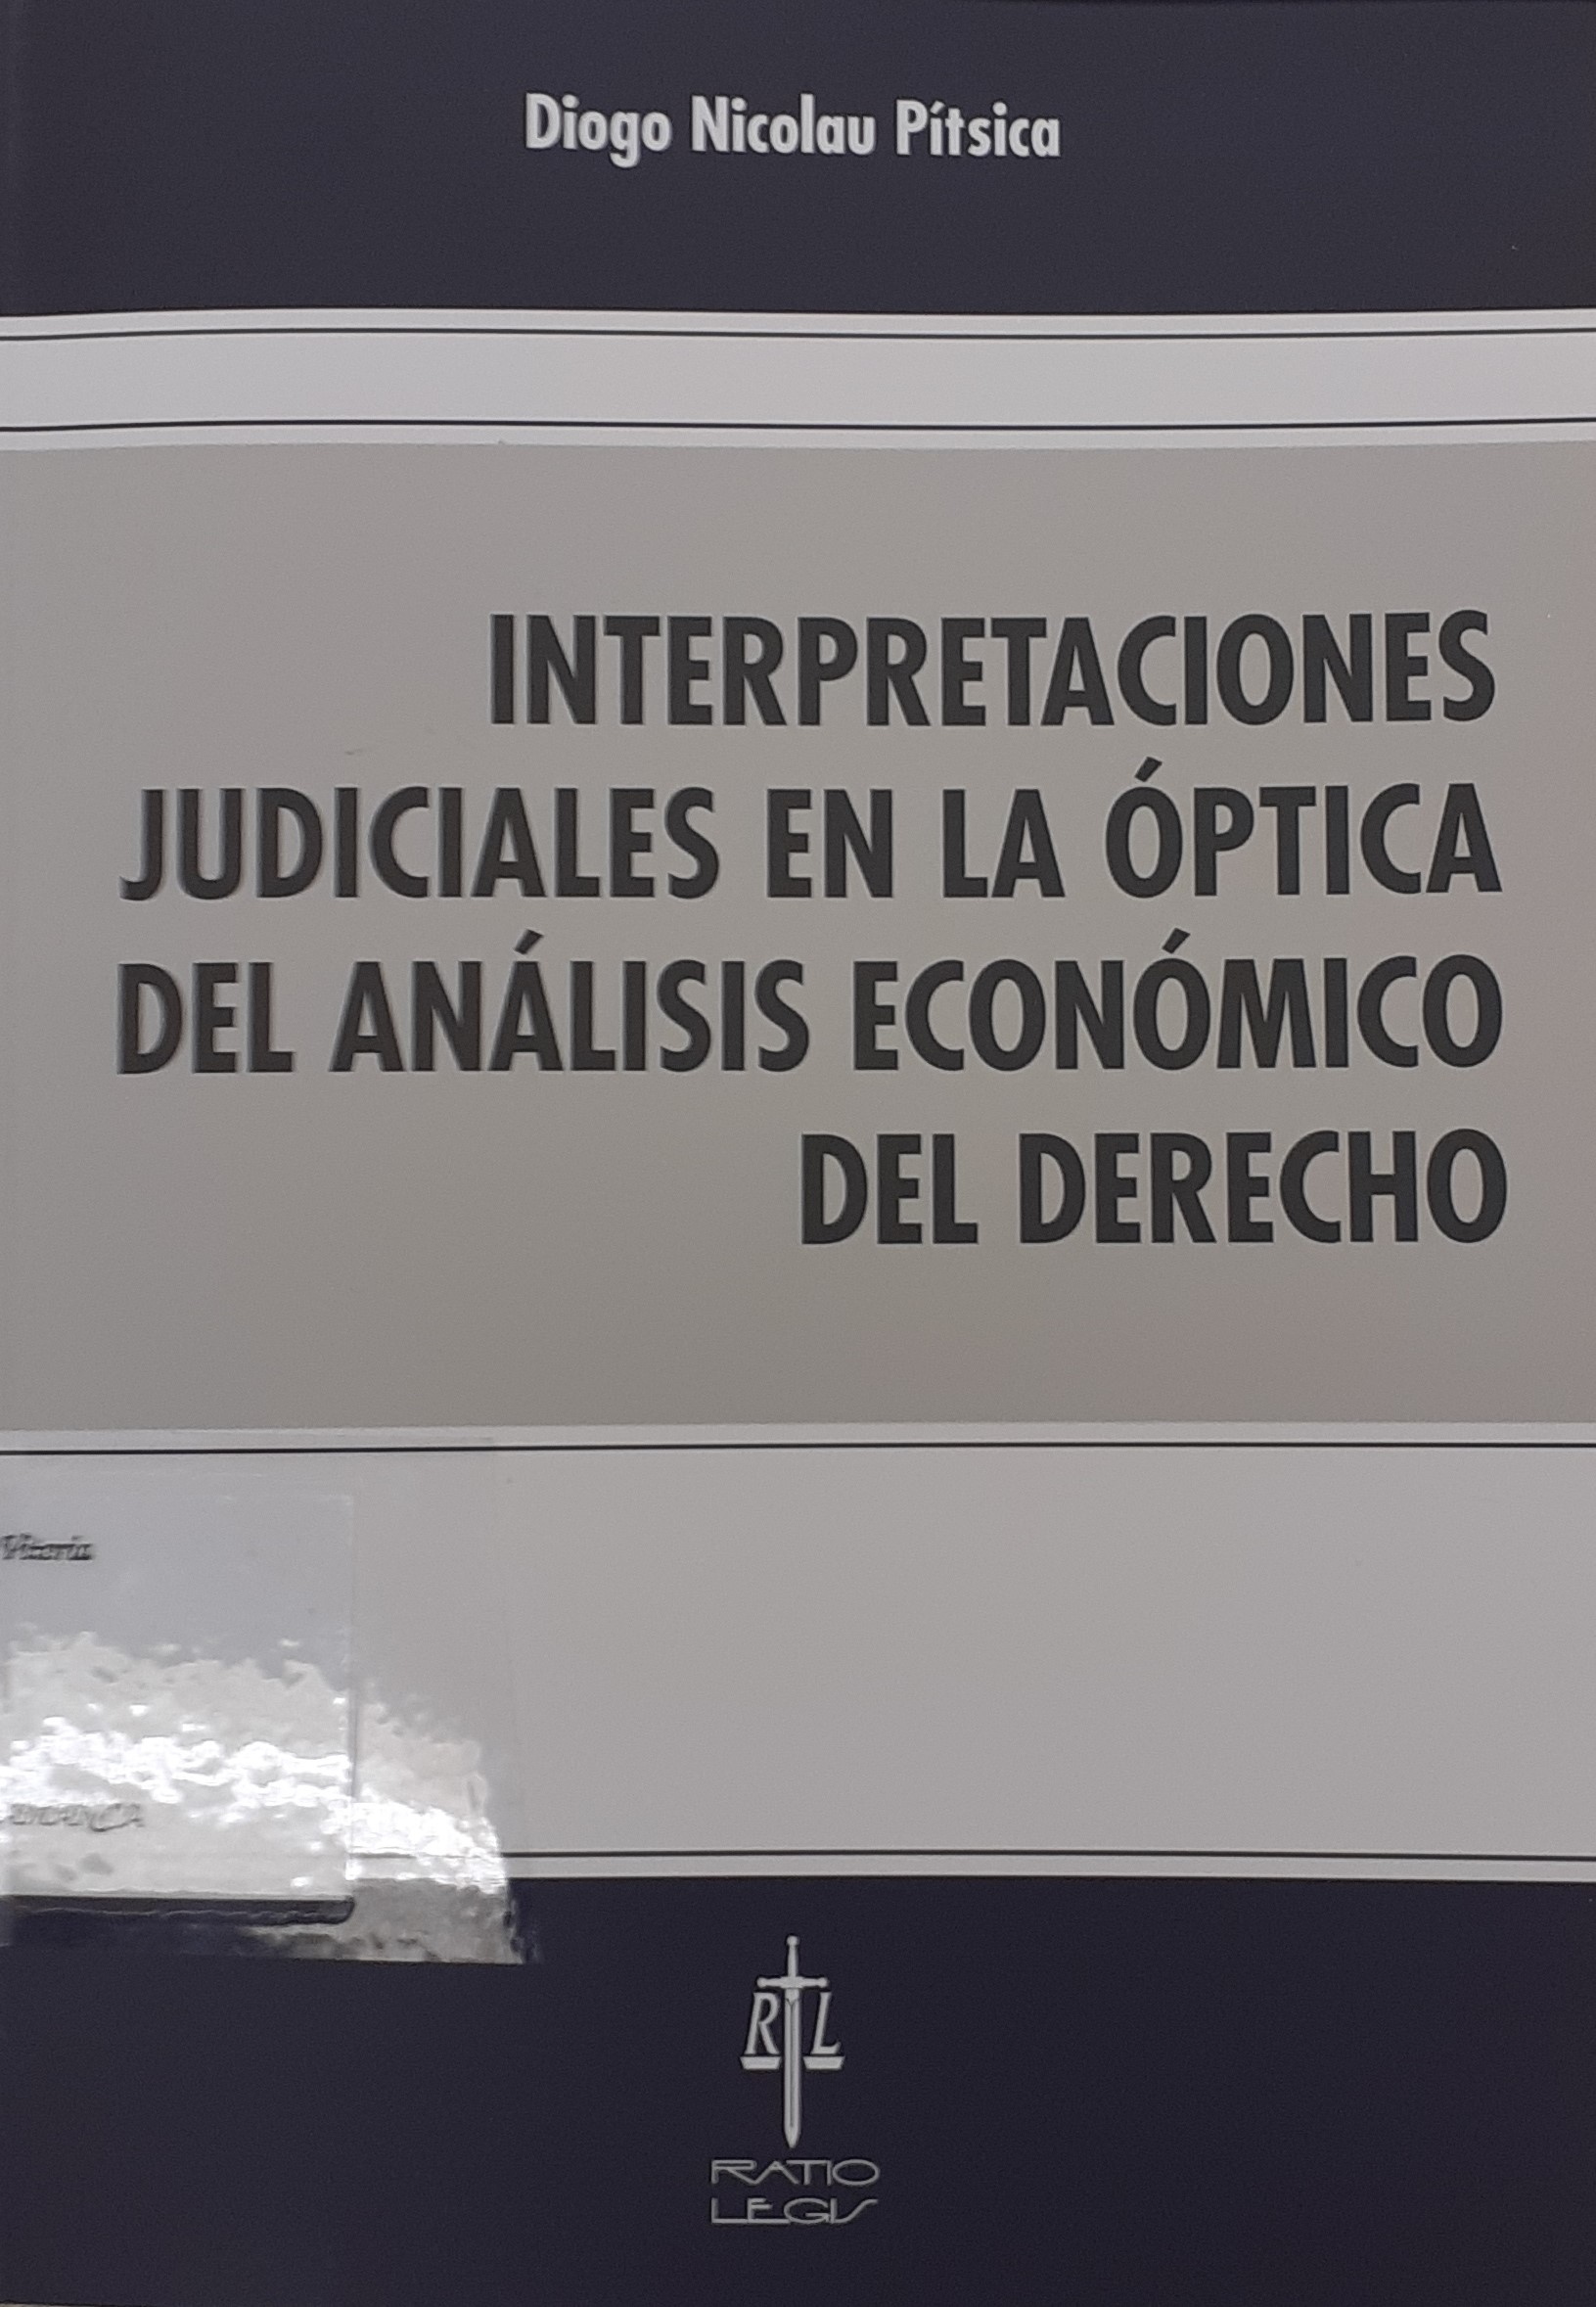 Imagen de portada del libro Interpretaciones judiciales en la óptica del análisis económico del derecho